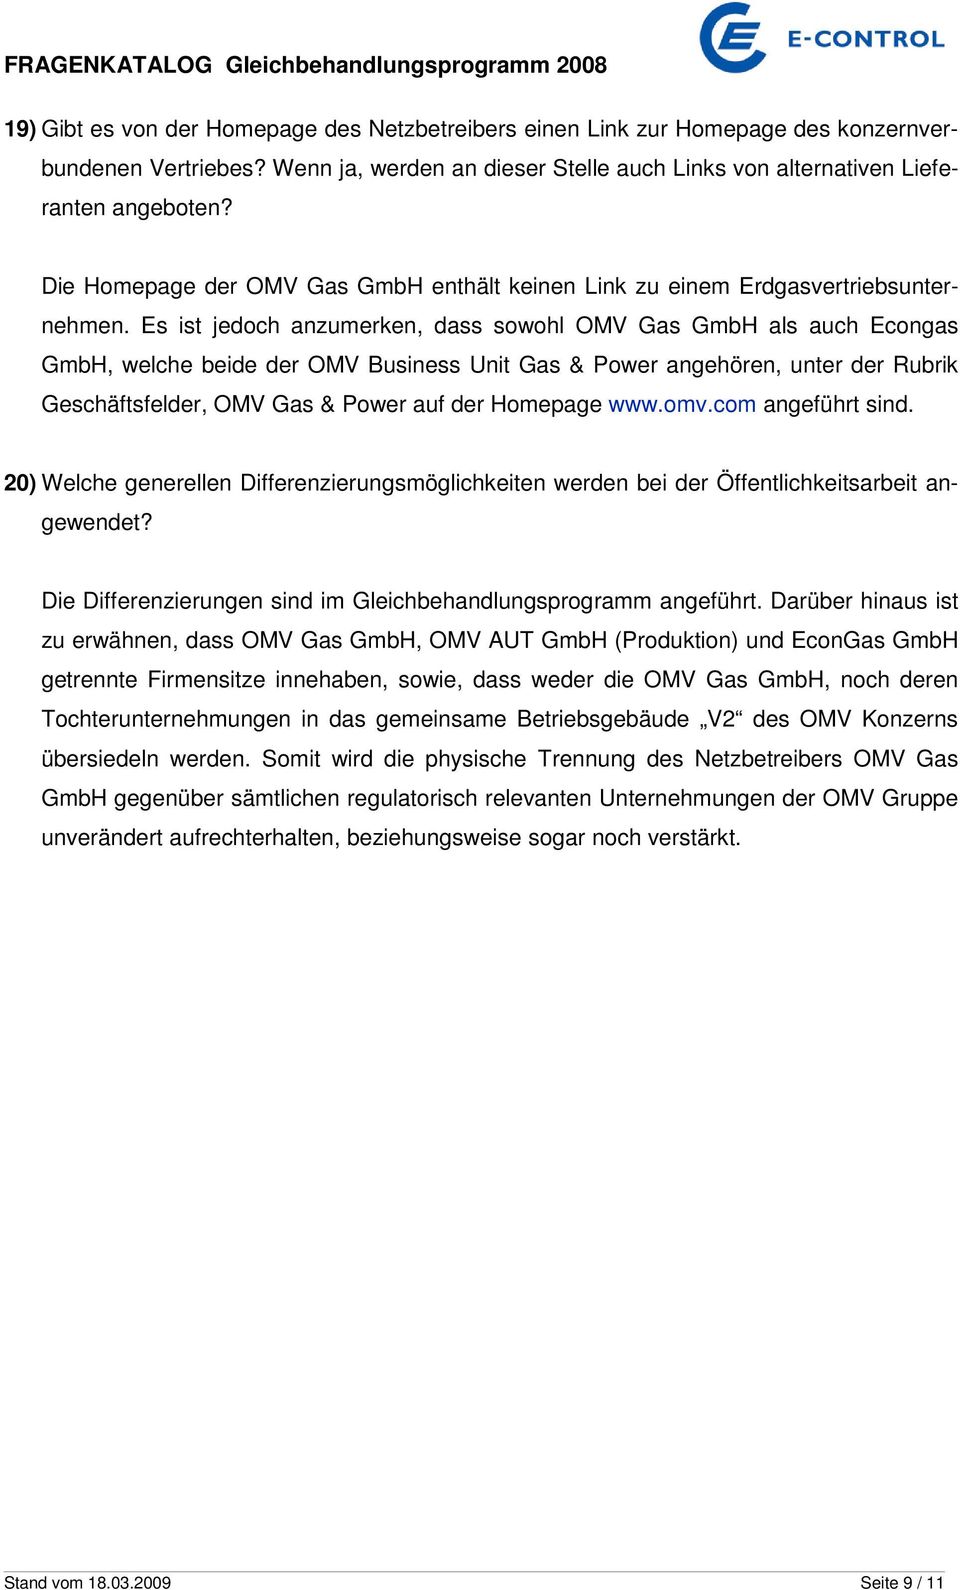 Es ist jedoch anzumerken, dass sowohl OMV Gas GmbH als auch Econgas GmbH, welche beide der OMV Business Unit Gas & Power angehören, unter der Rubrik Geschäftsfelder, OMV Gas & Power auf der Homepage